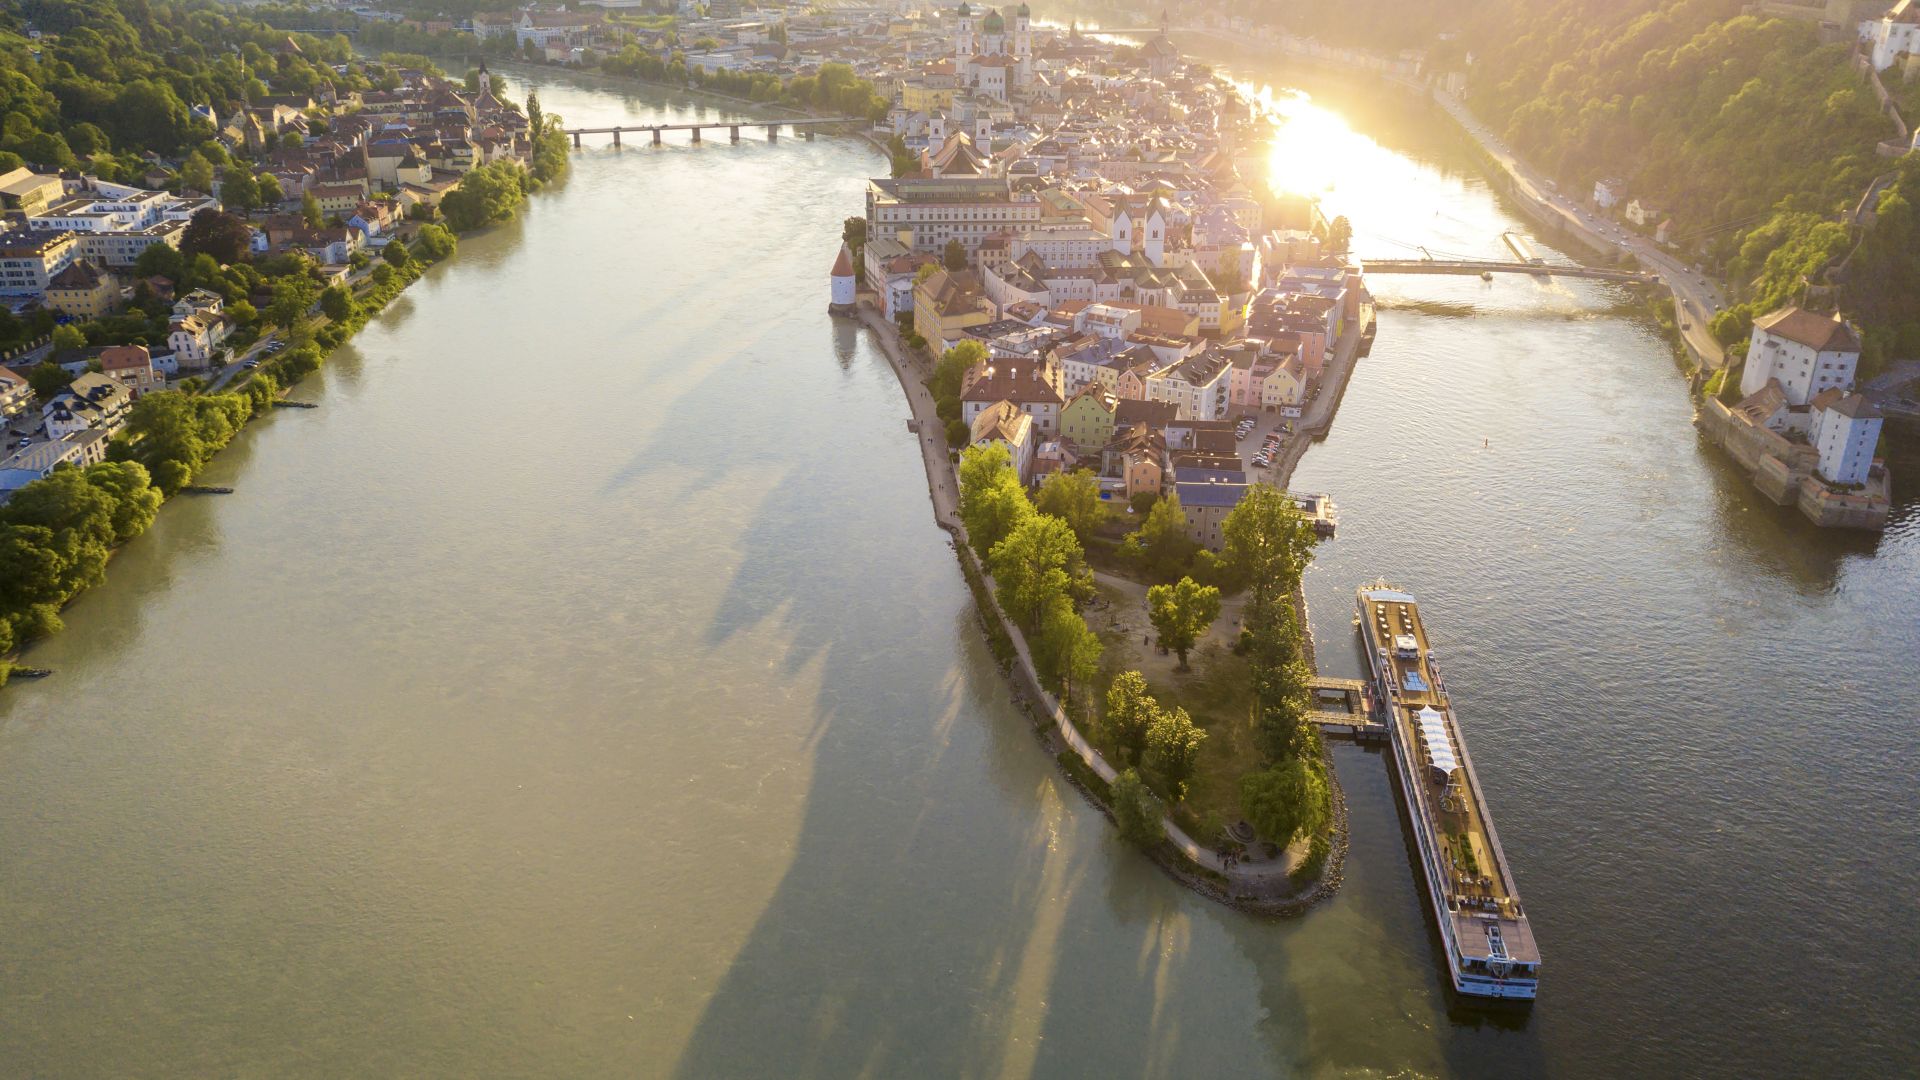 Passau: Three Rivers Corner with Ilz, Danube and Inn